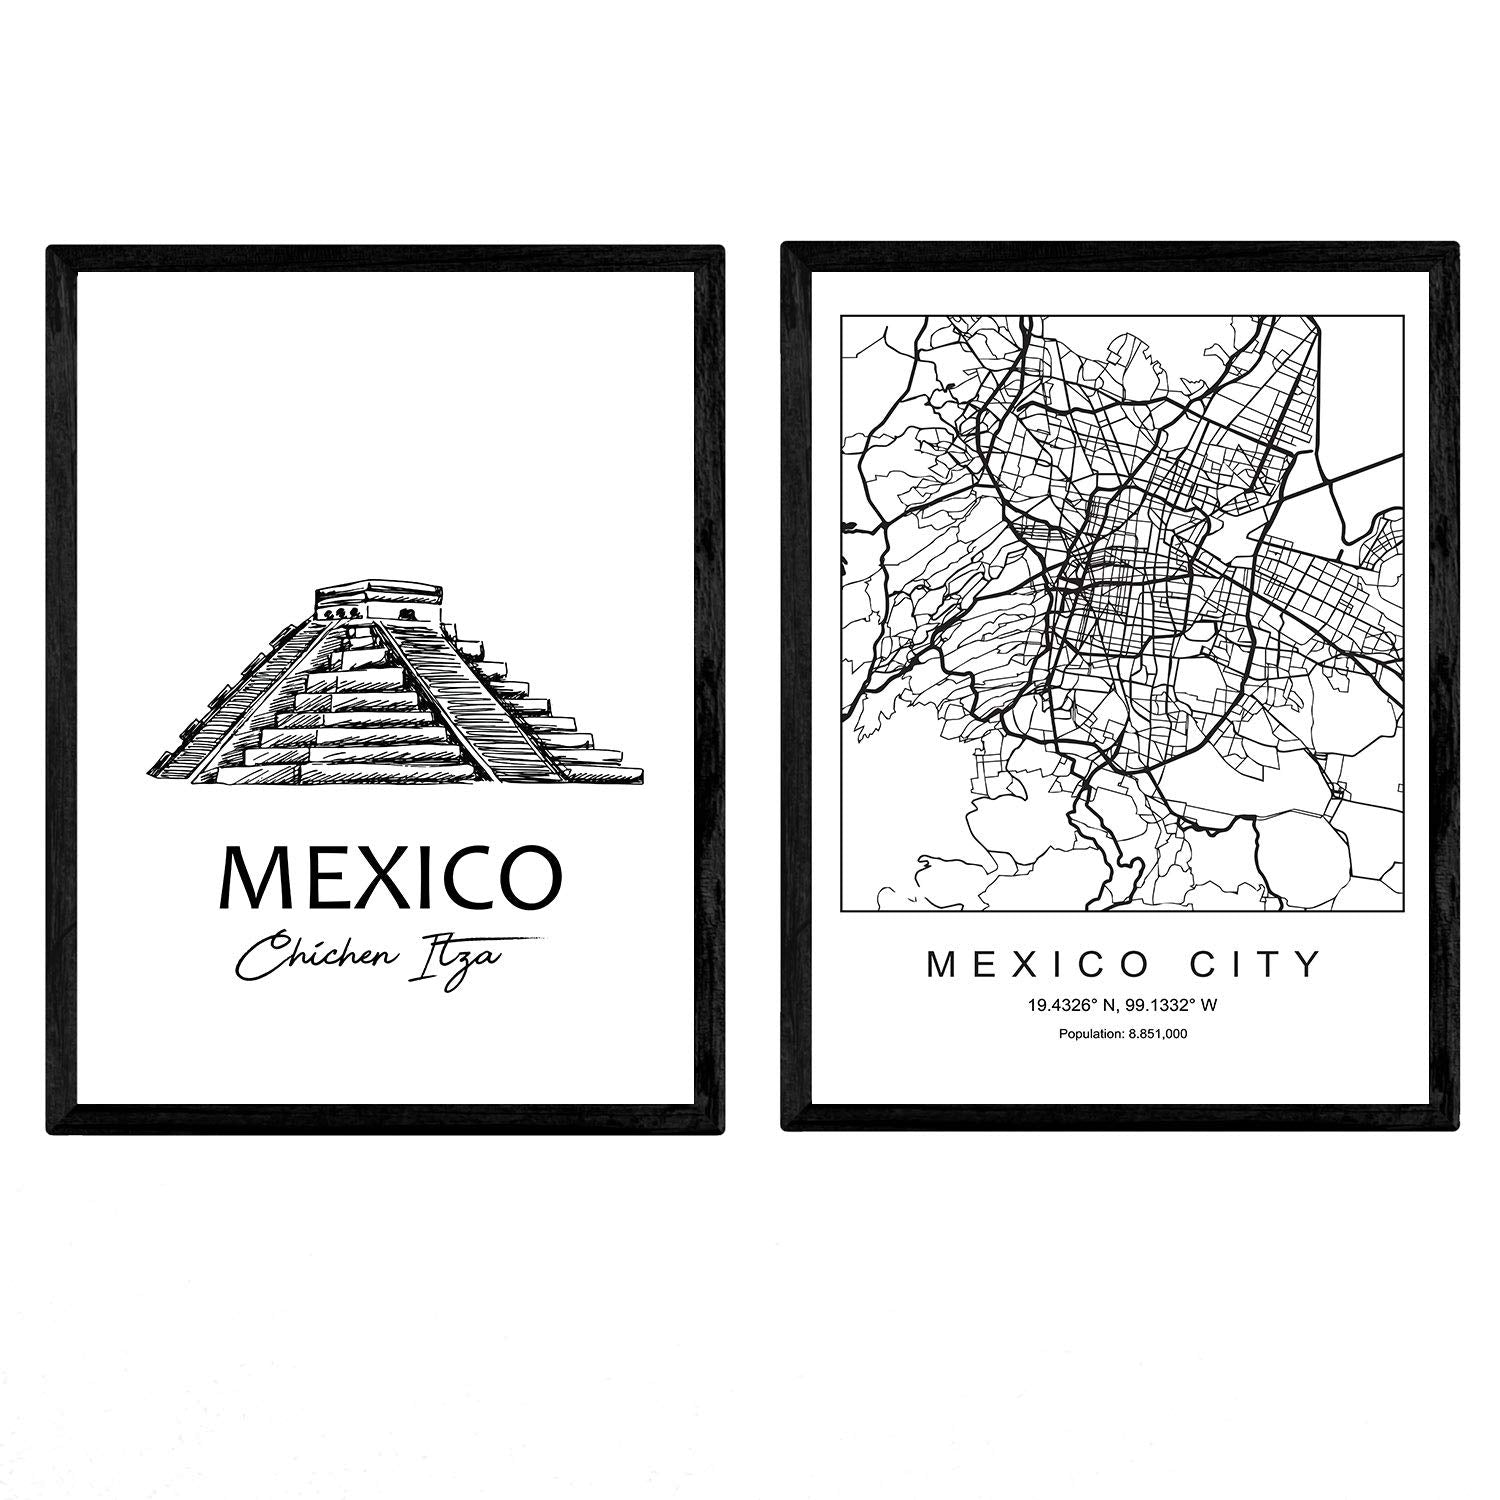 Pack de posters de Mexico - Chichen itza. Láminas con monumentos de ciudades.-Artwork-Nacnic-Nacnic Estudio SL